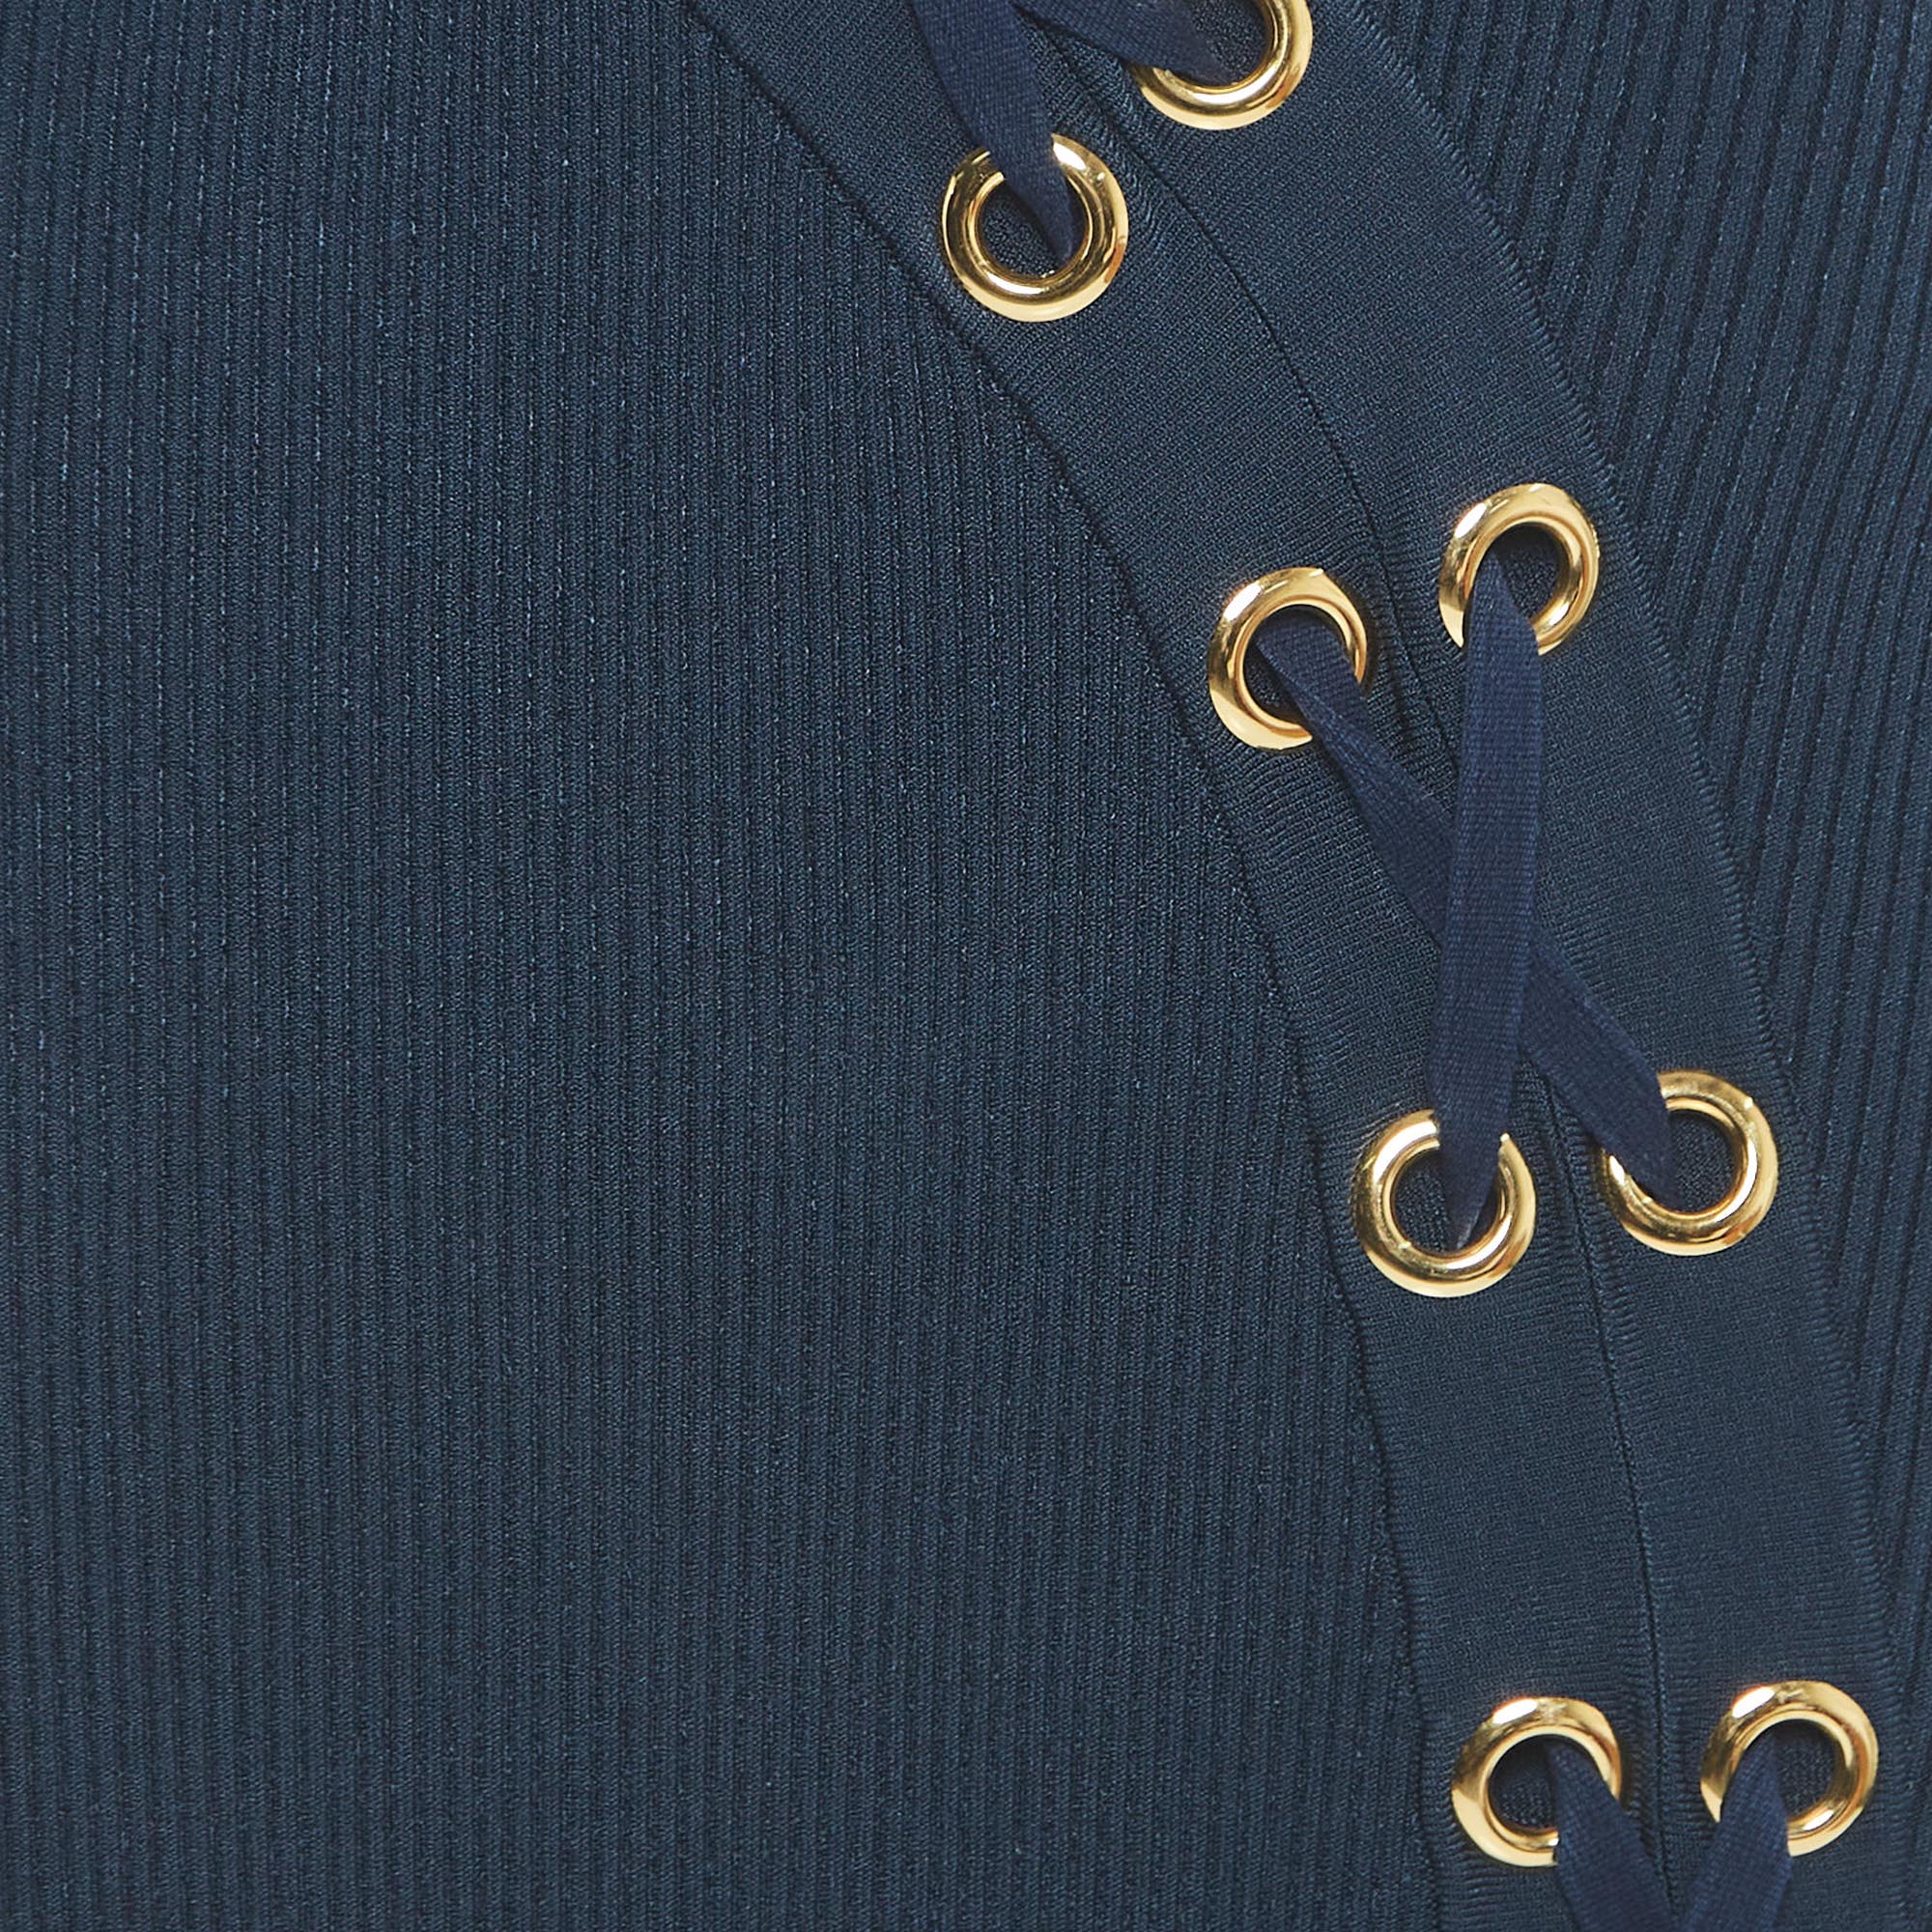 Alexander McQueen Navy Blue Knit Sleeveless Slip Dress M